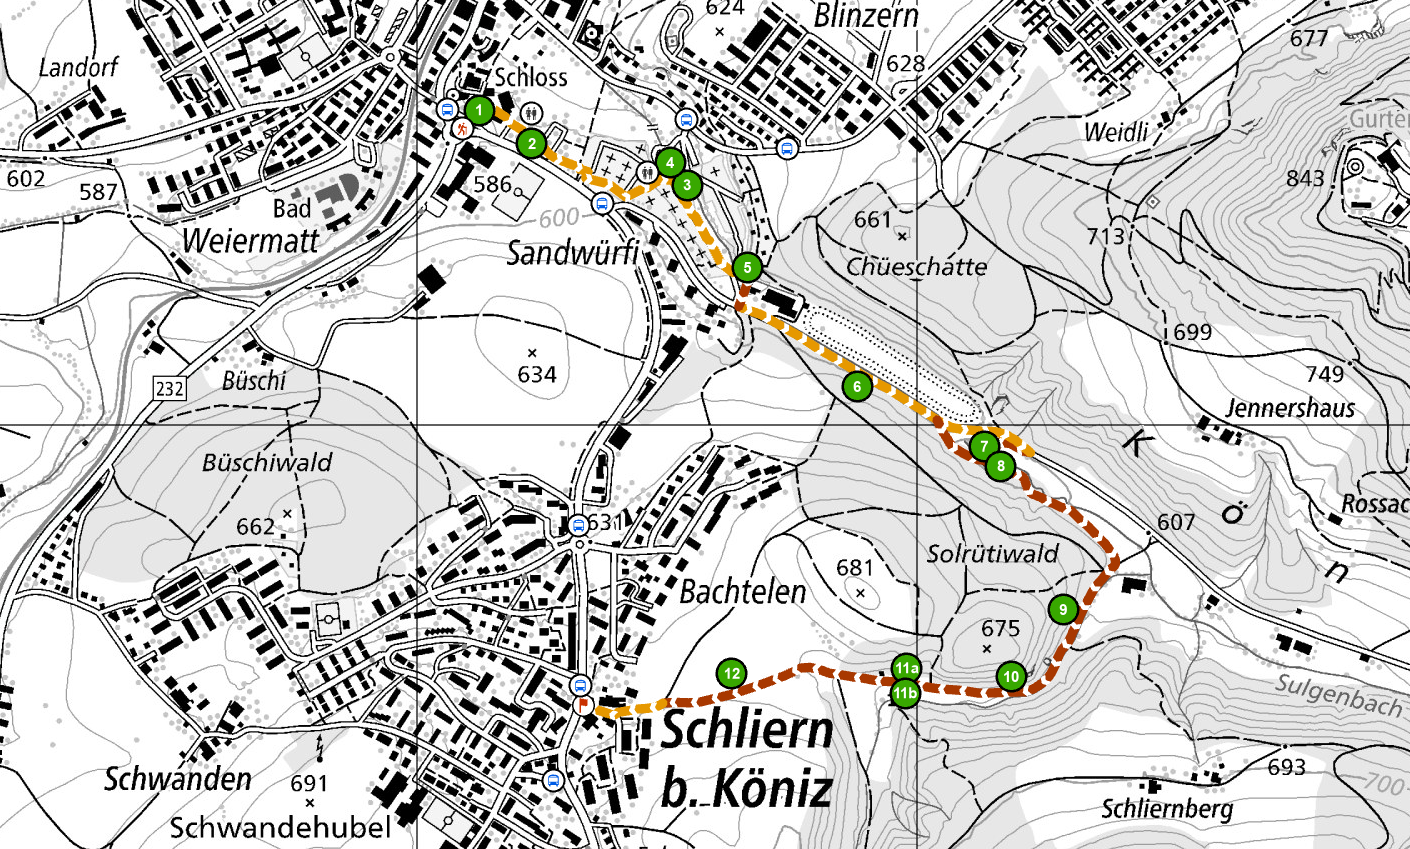 Kartenausschnitt mit der Spaziergang-Route